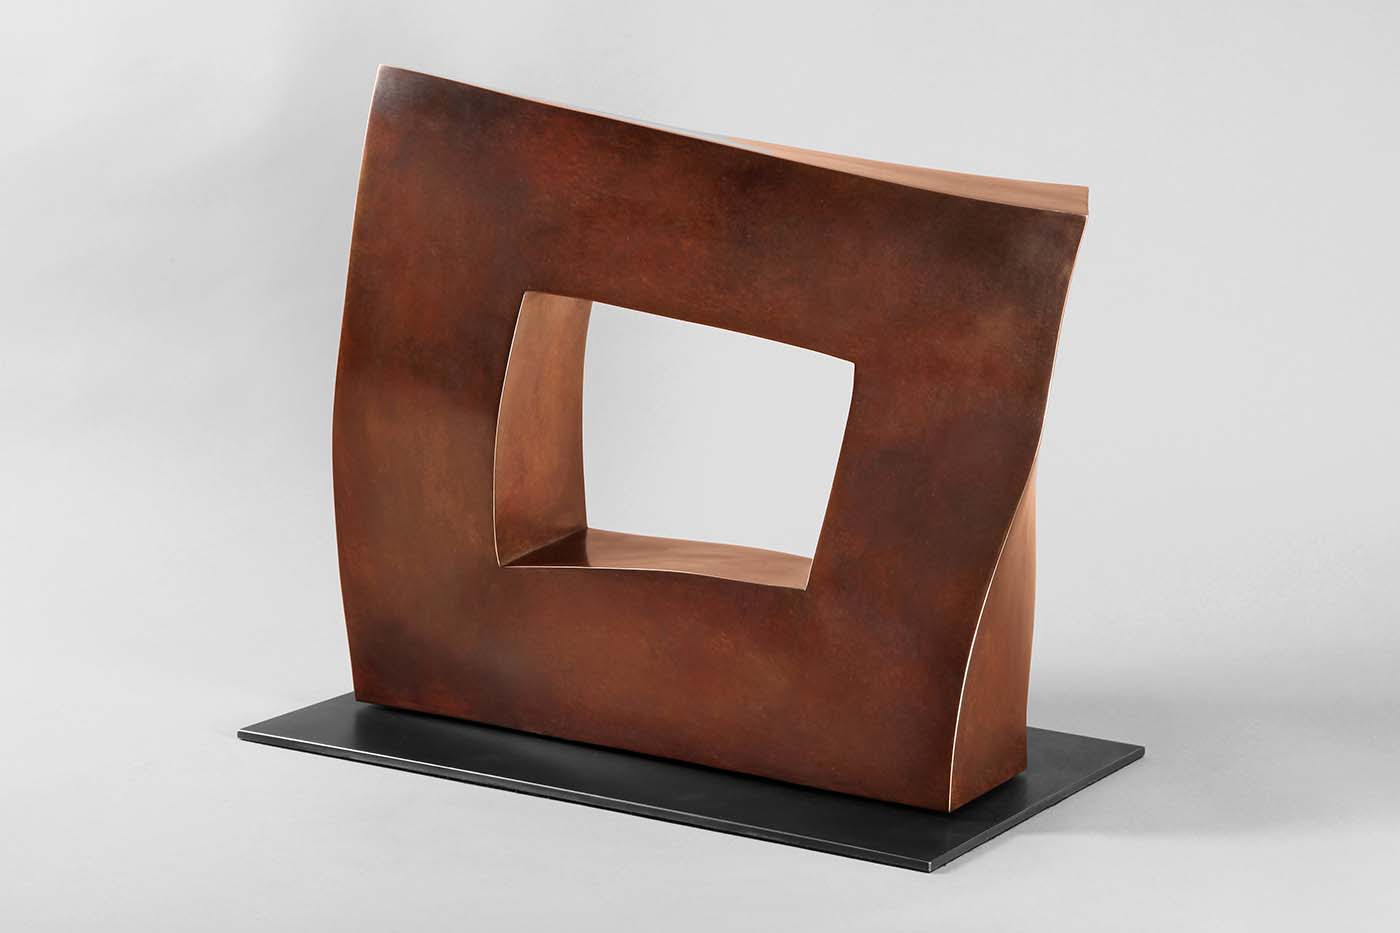 Durchblick (II), 2015, 38 x 40 x 20 cm